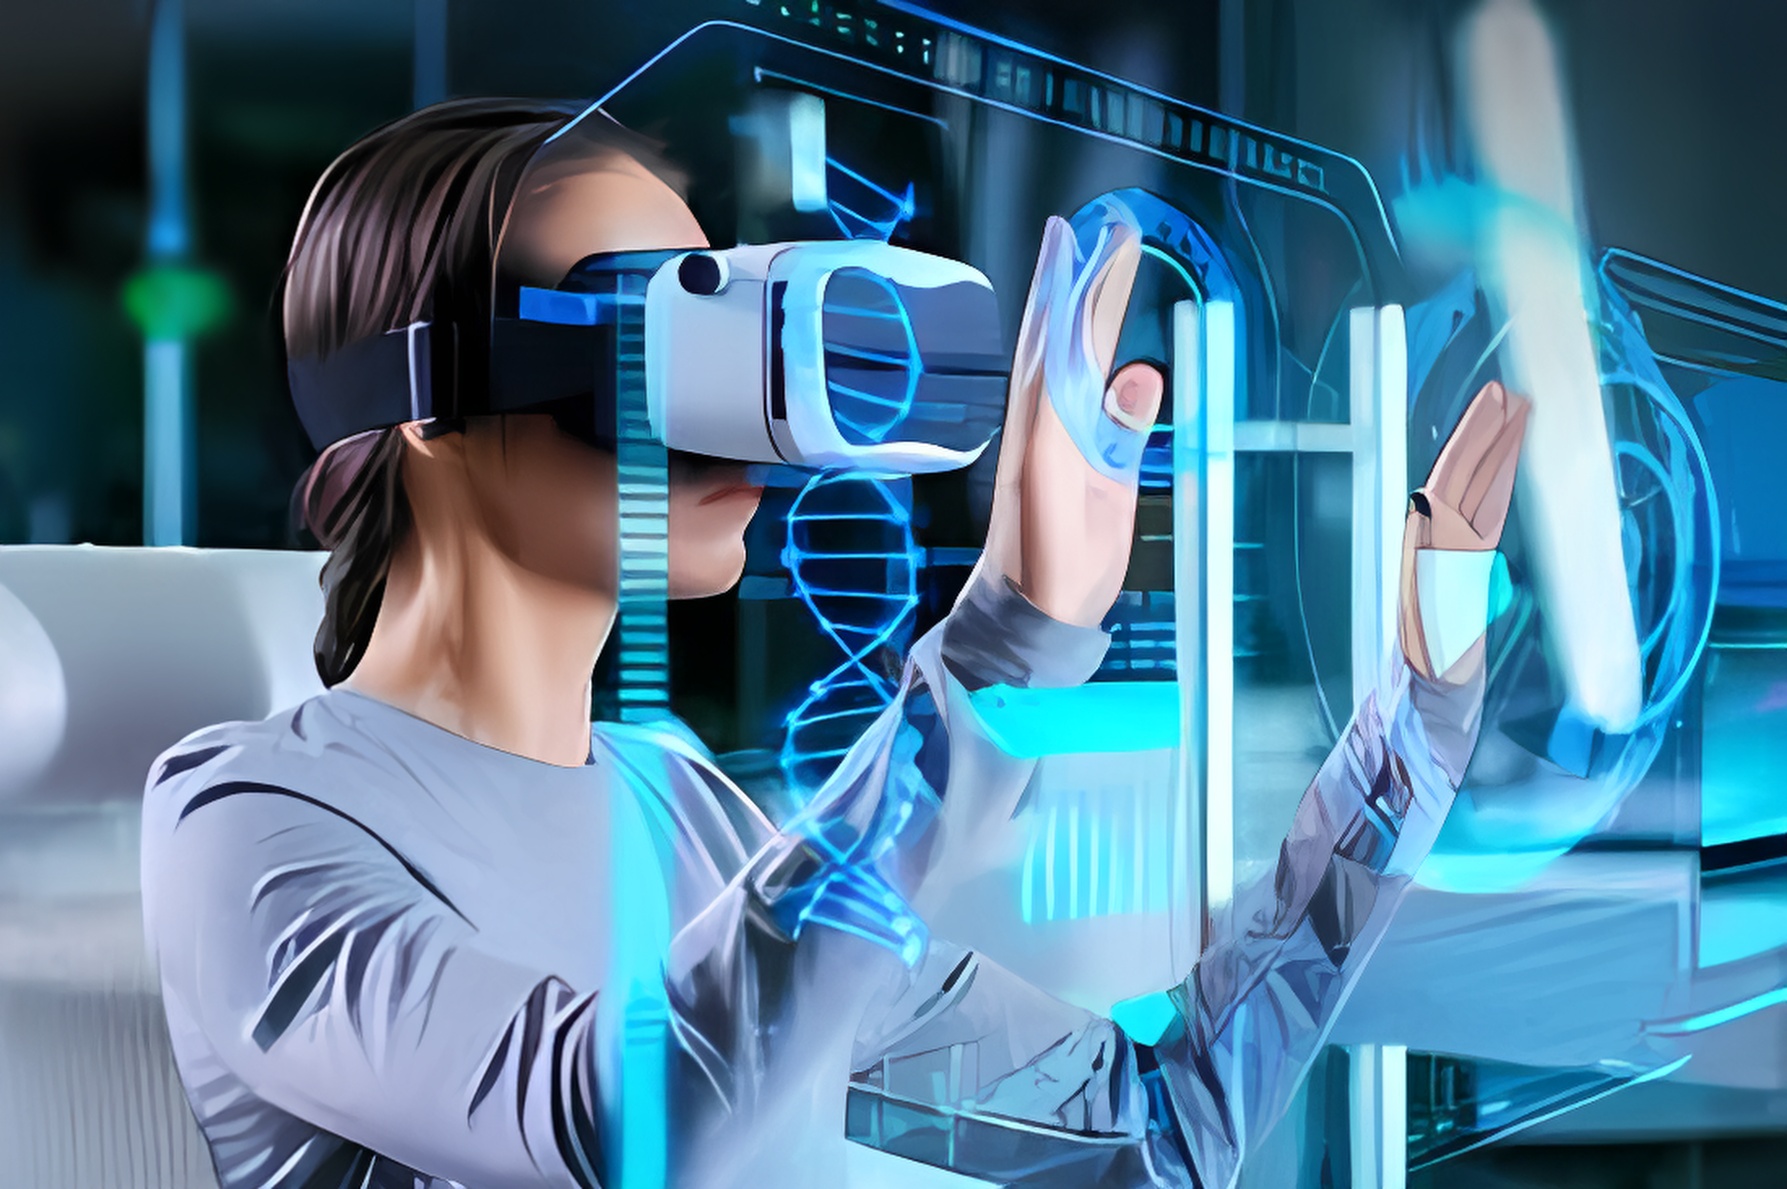 图片展示一位女性正戴着虚拟现实头盔，使用手势与前方的高科技透明屏幕互动，周围是现代化办公室环境。